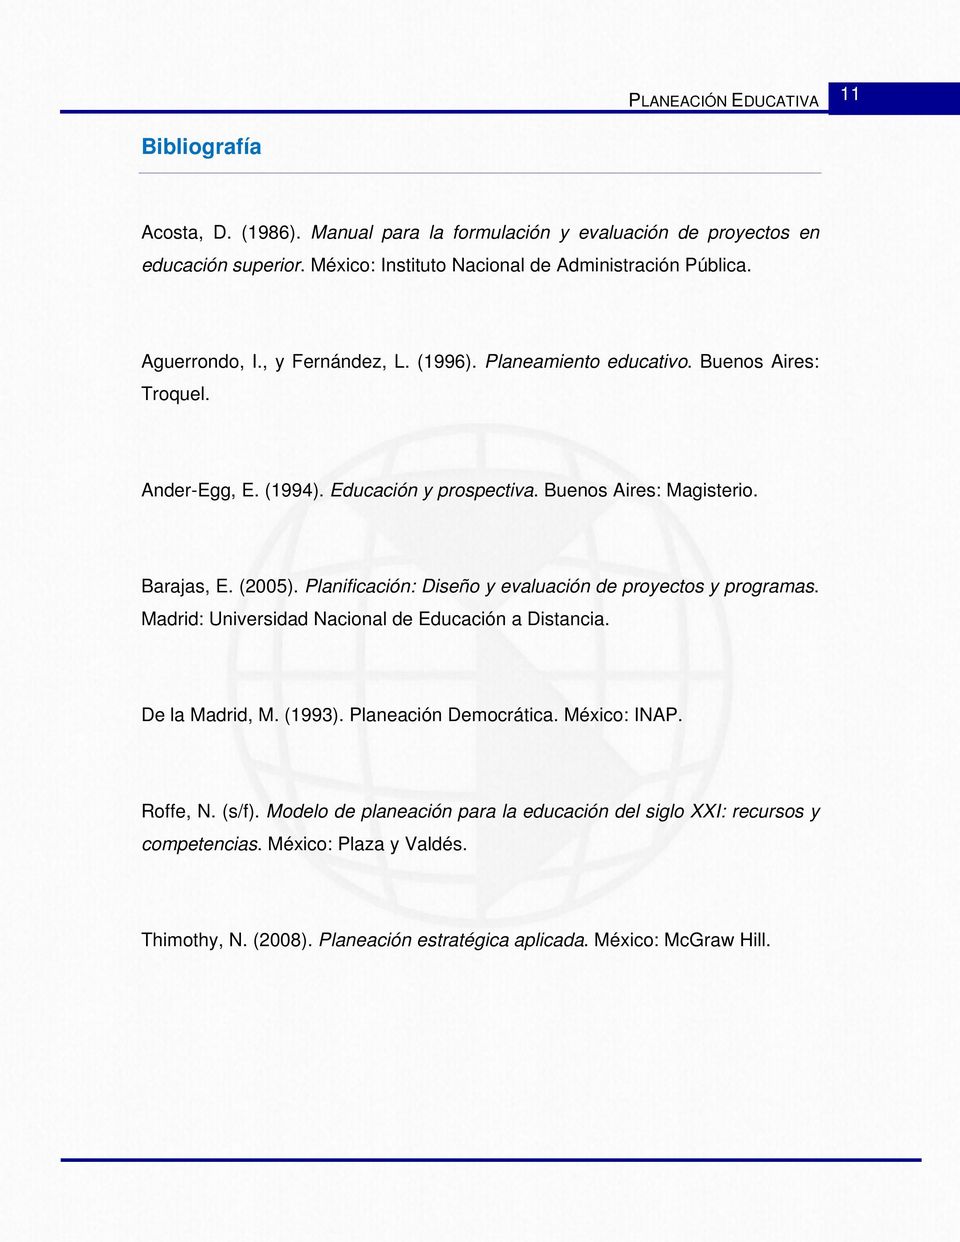 Planificación: Diseño y evaluación de proyectos y programas. Madrid: Universidad Nacional de Educación a Distancia. De la Madrid, M. (1993). Planeación Democrática. México: INAP.